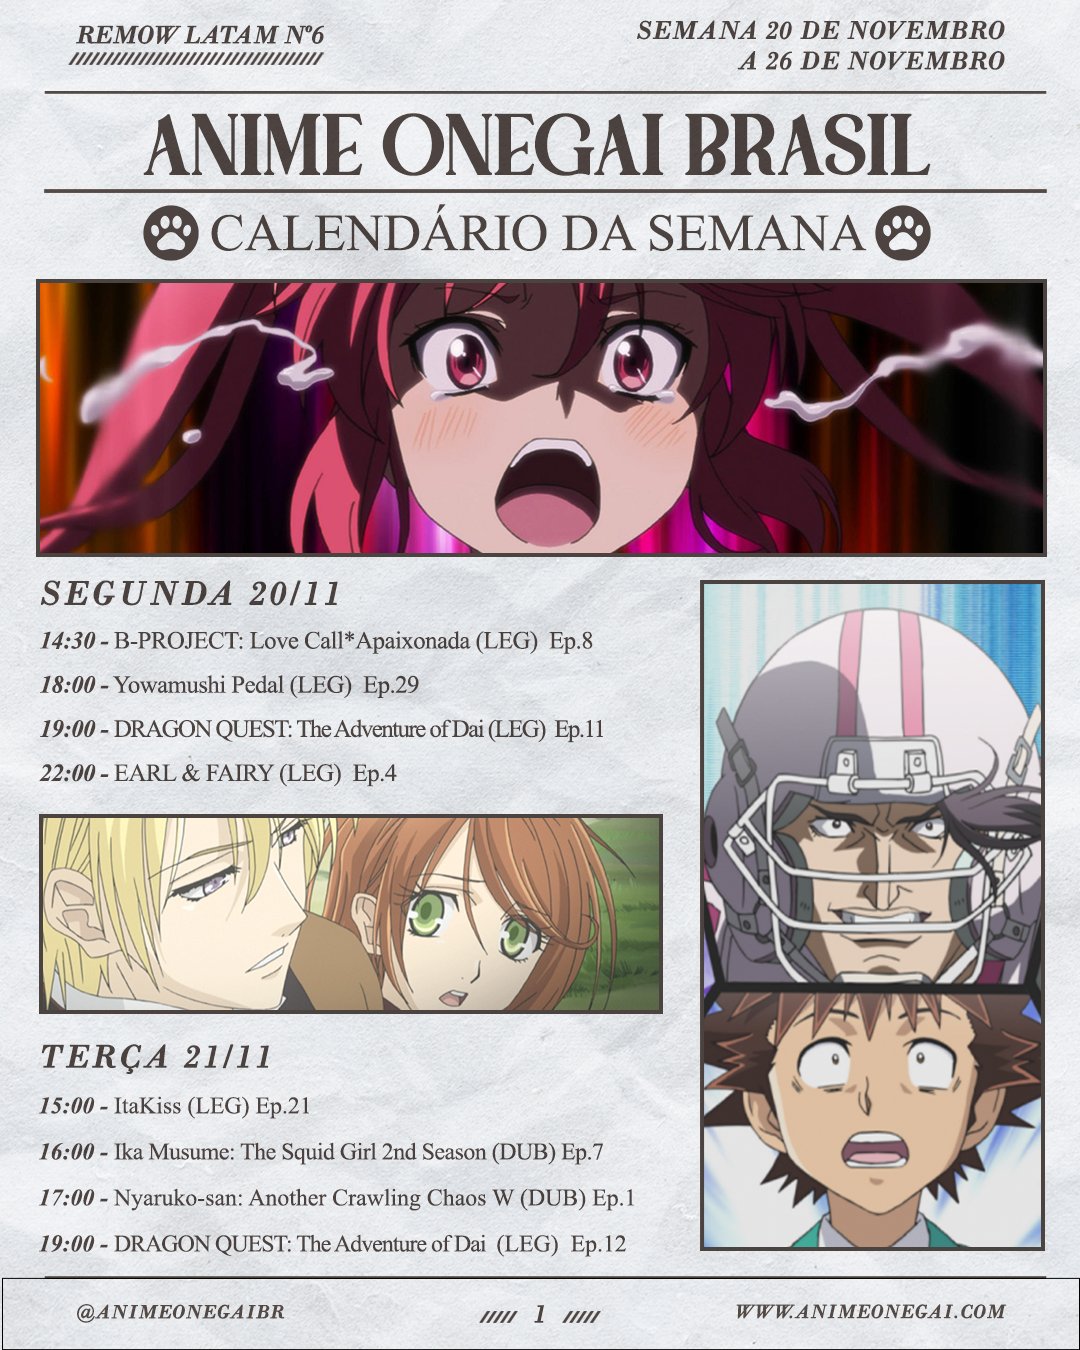 Anime Onegai Brasil on X: Antes de dormir, que tal conferir tudo que vai  rolar na  esta semana? Vamos aproveitar o feriado  com maratonas de Natsume 3, Full Moon e Samurai